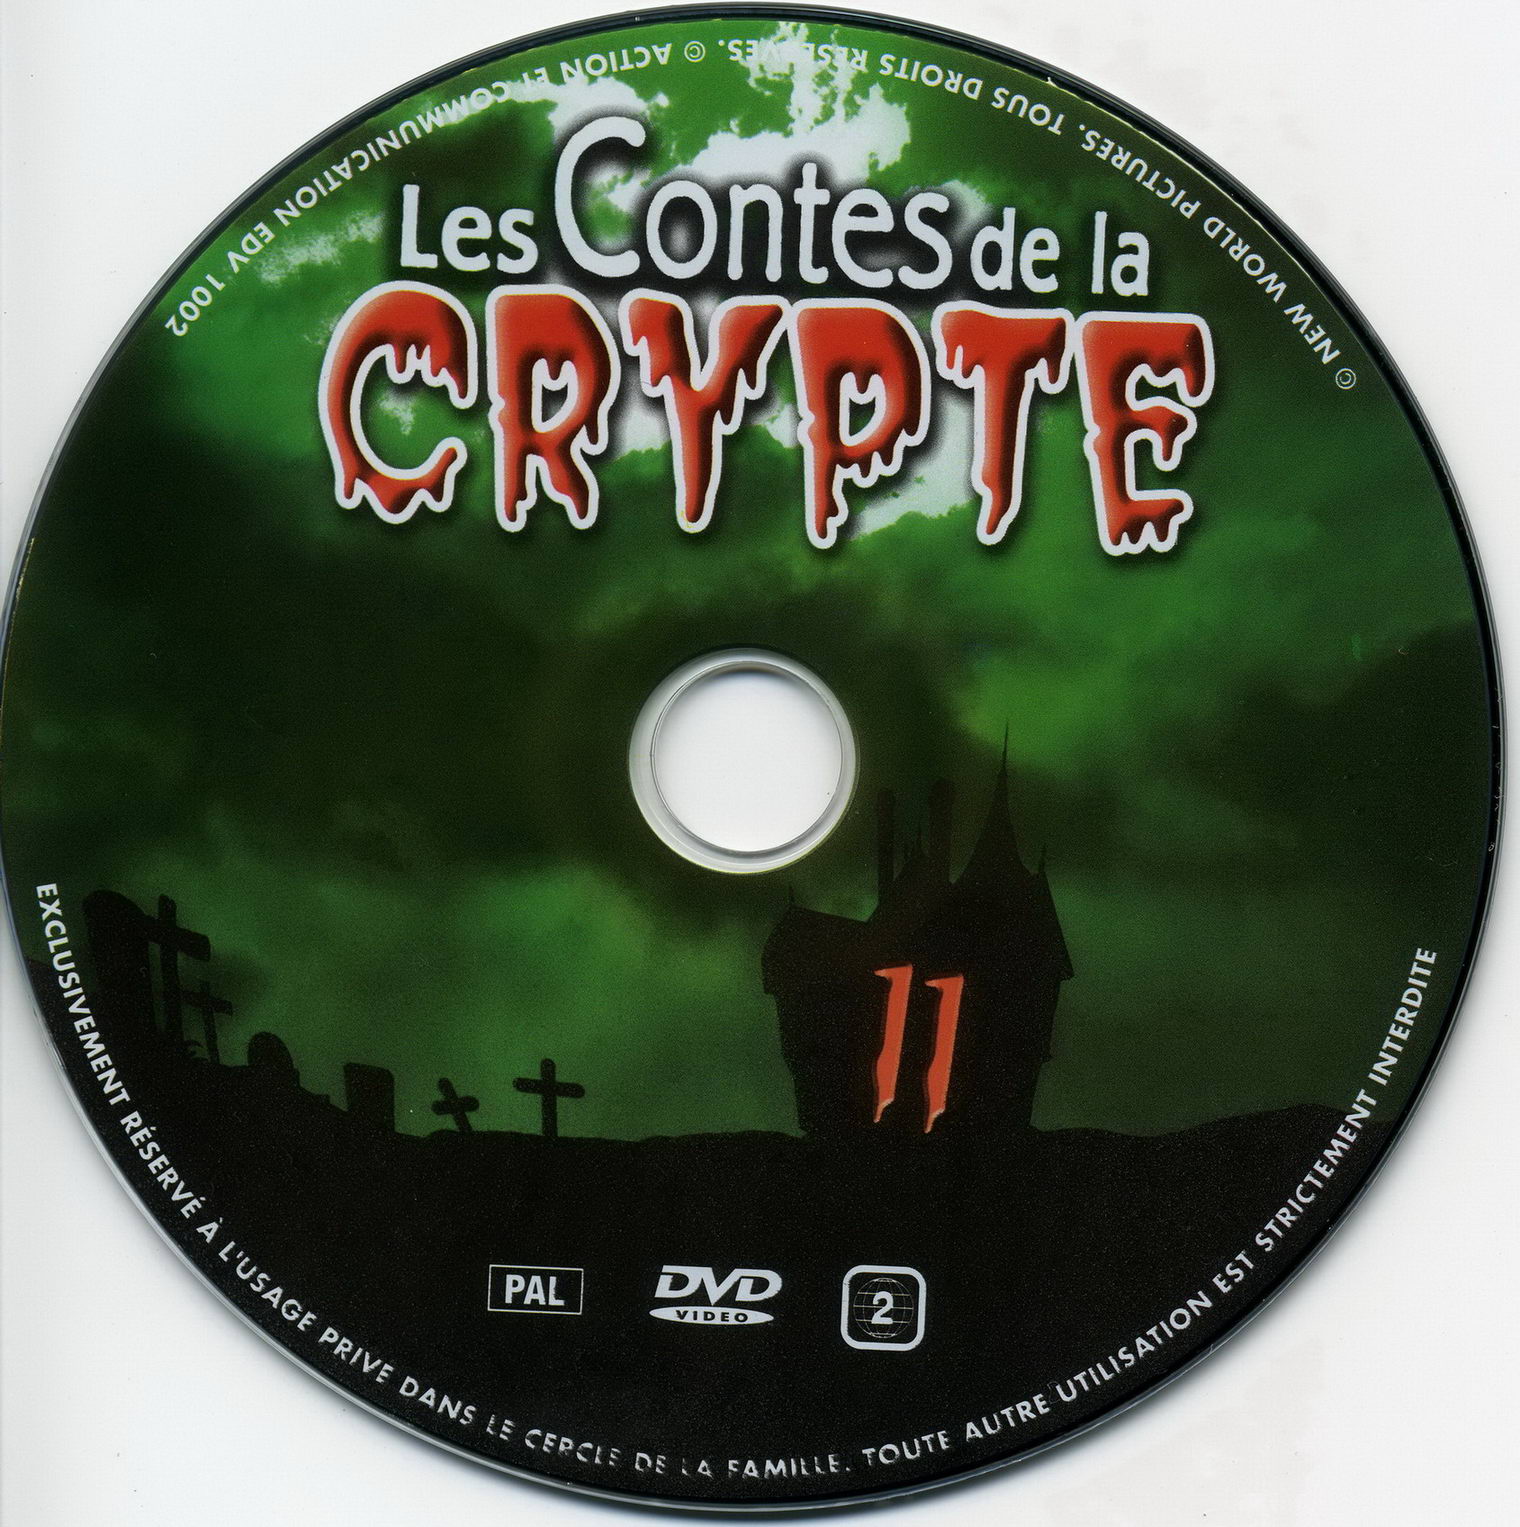 Les contes de la crypte vol 11 v2